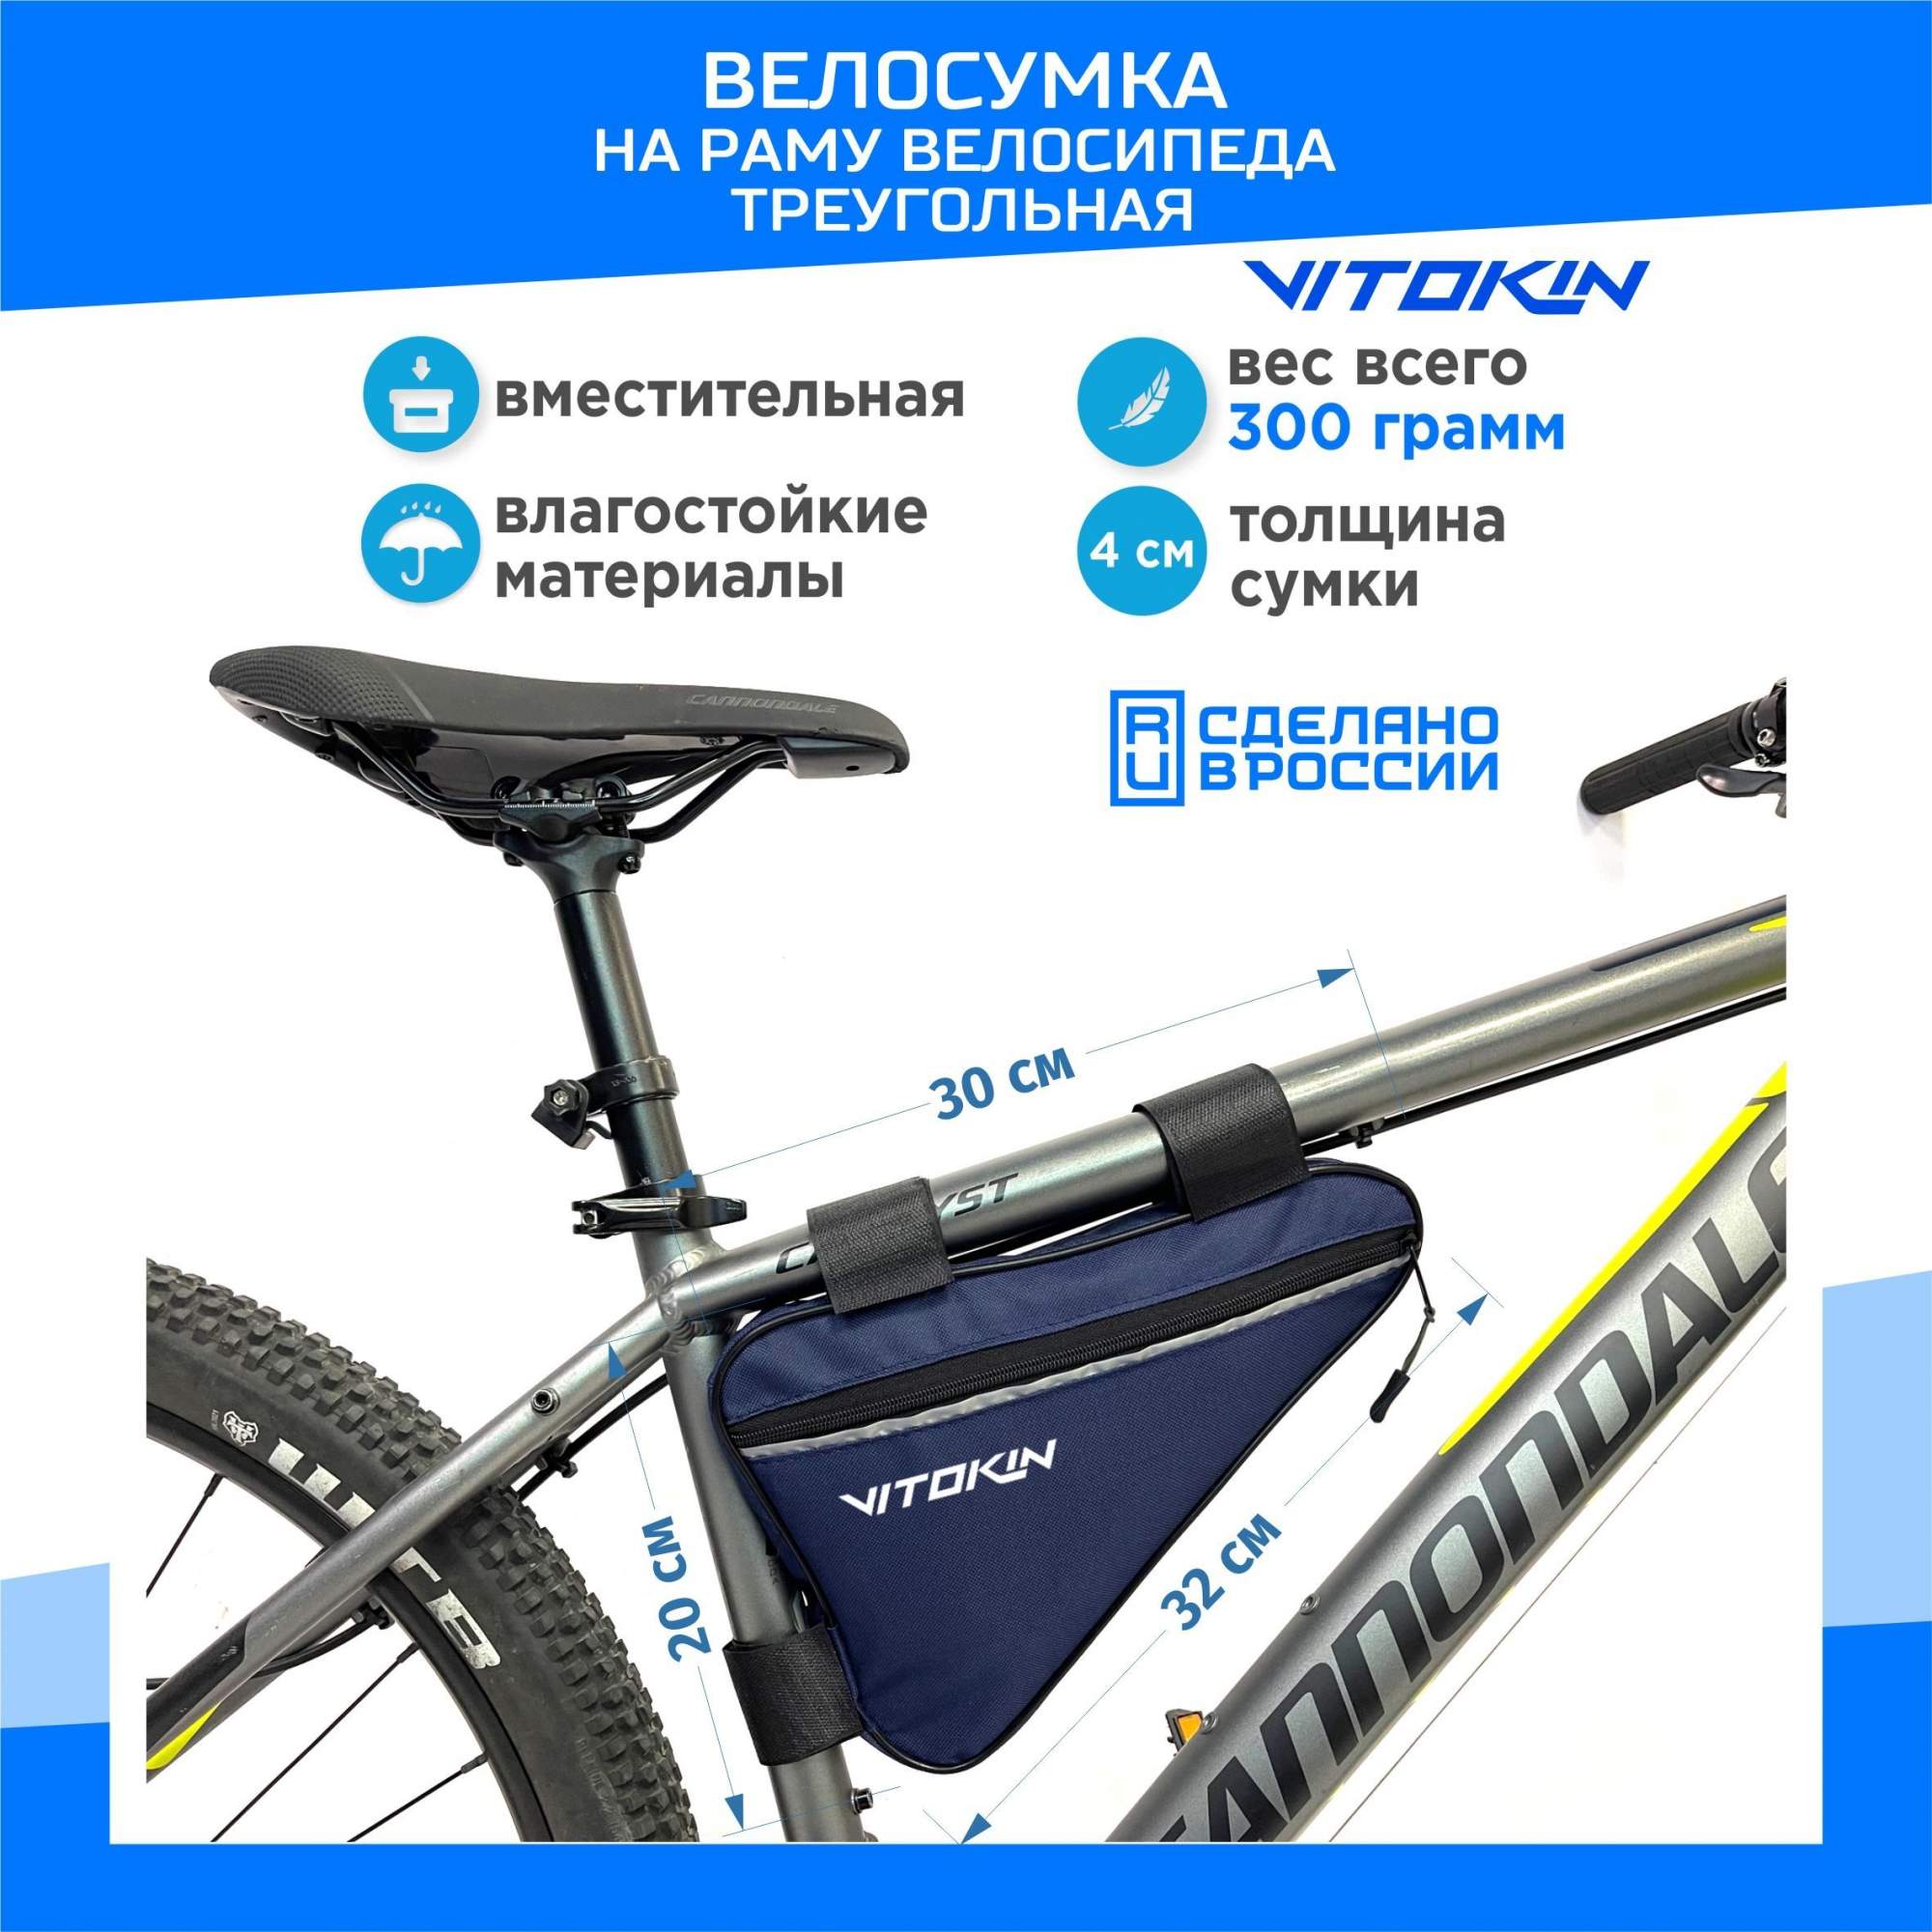 Велосумка на раму велосипеда VITOKIN, синяя - купить в Москве, цены на Мегамаркет | 600016379483